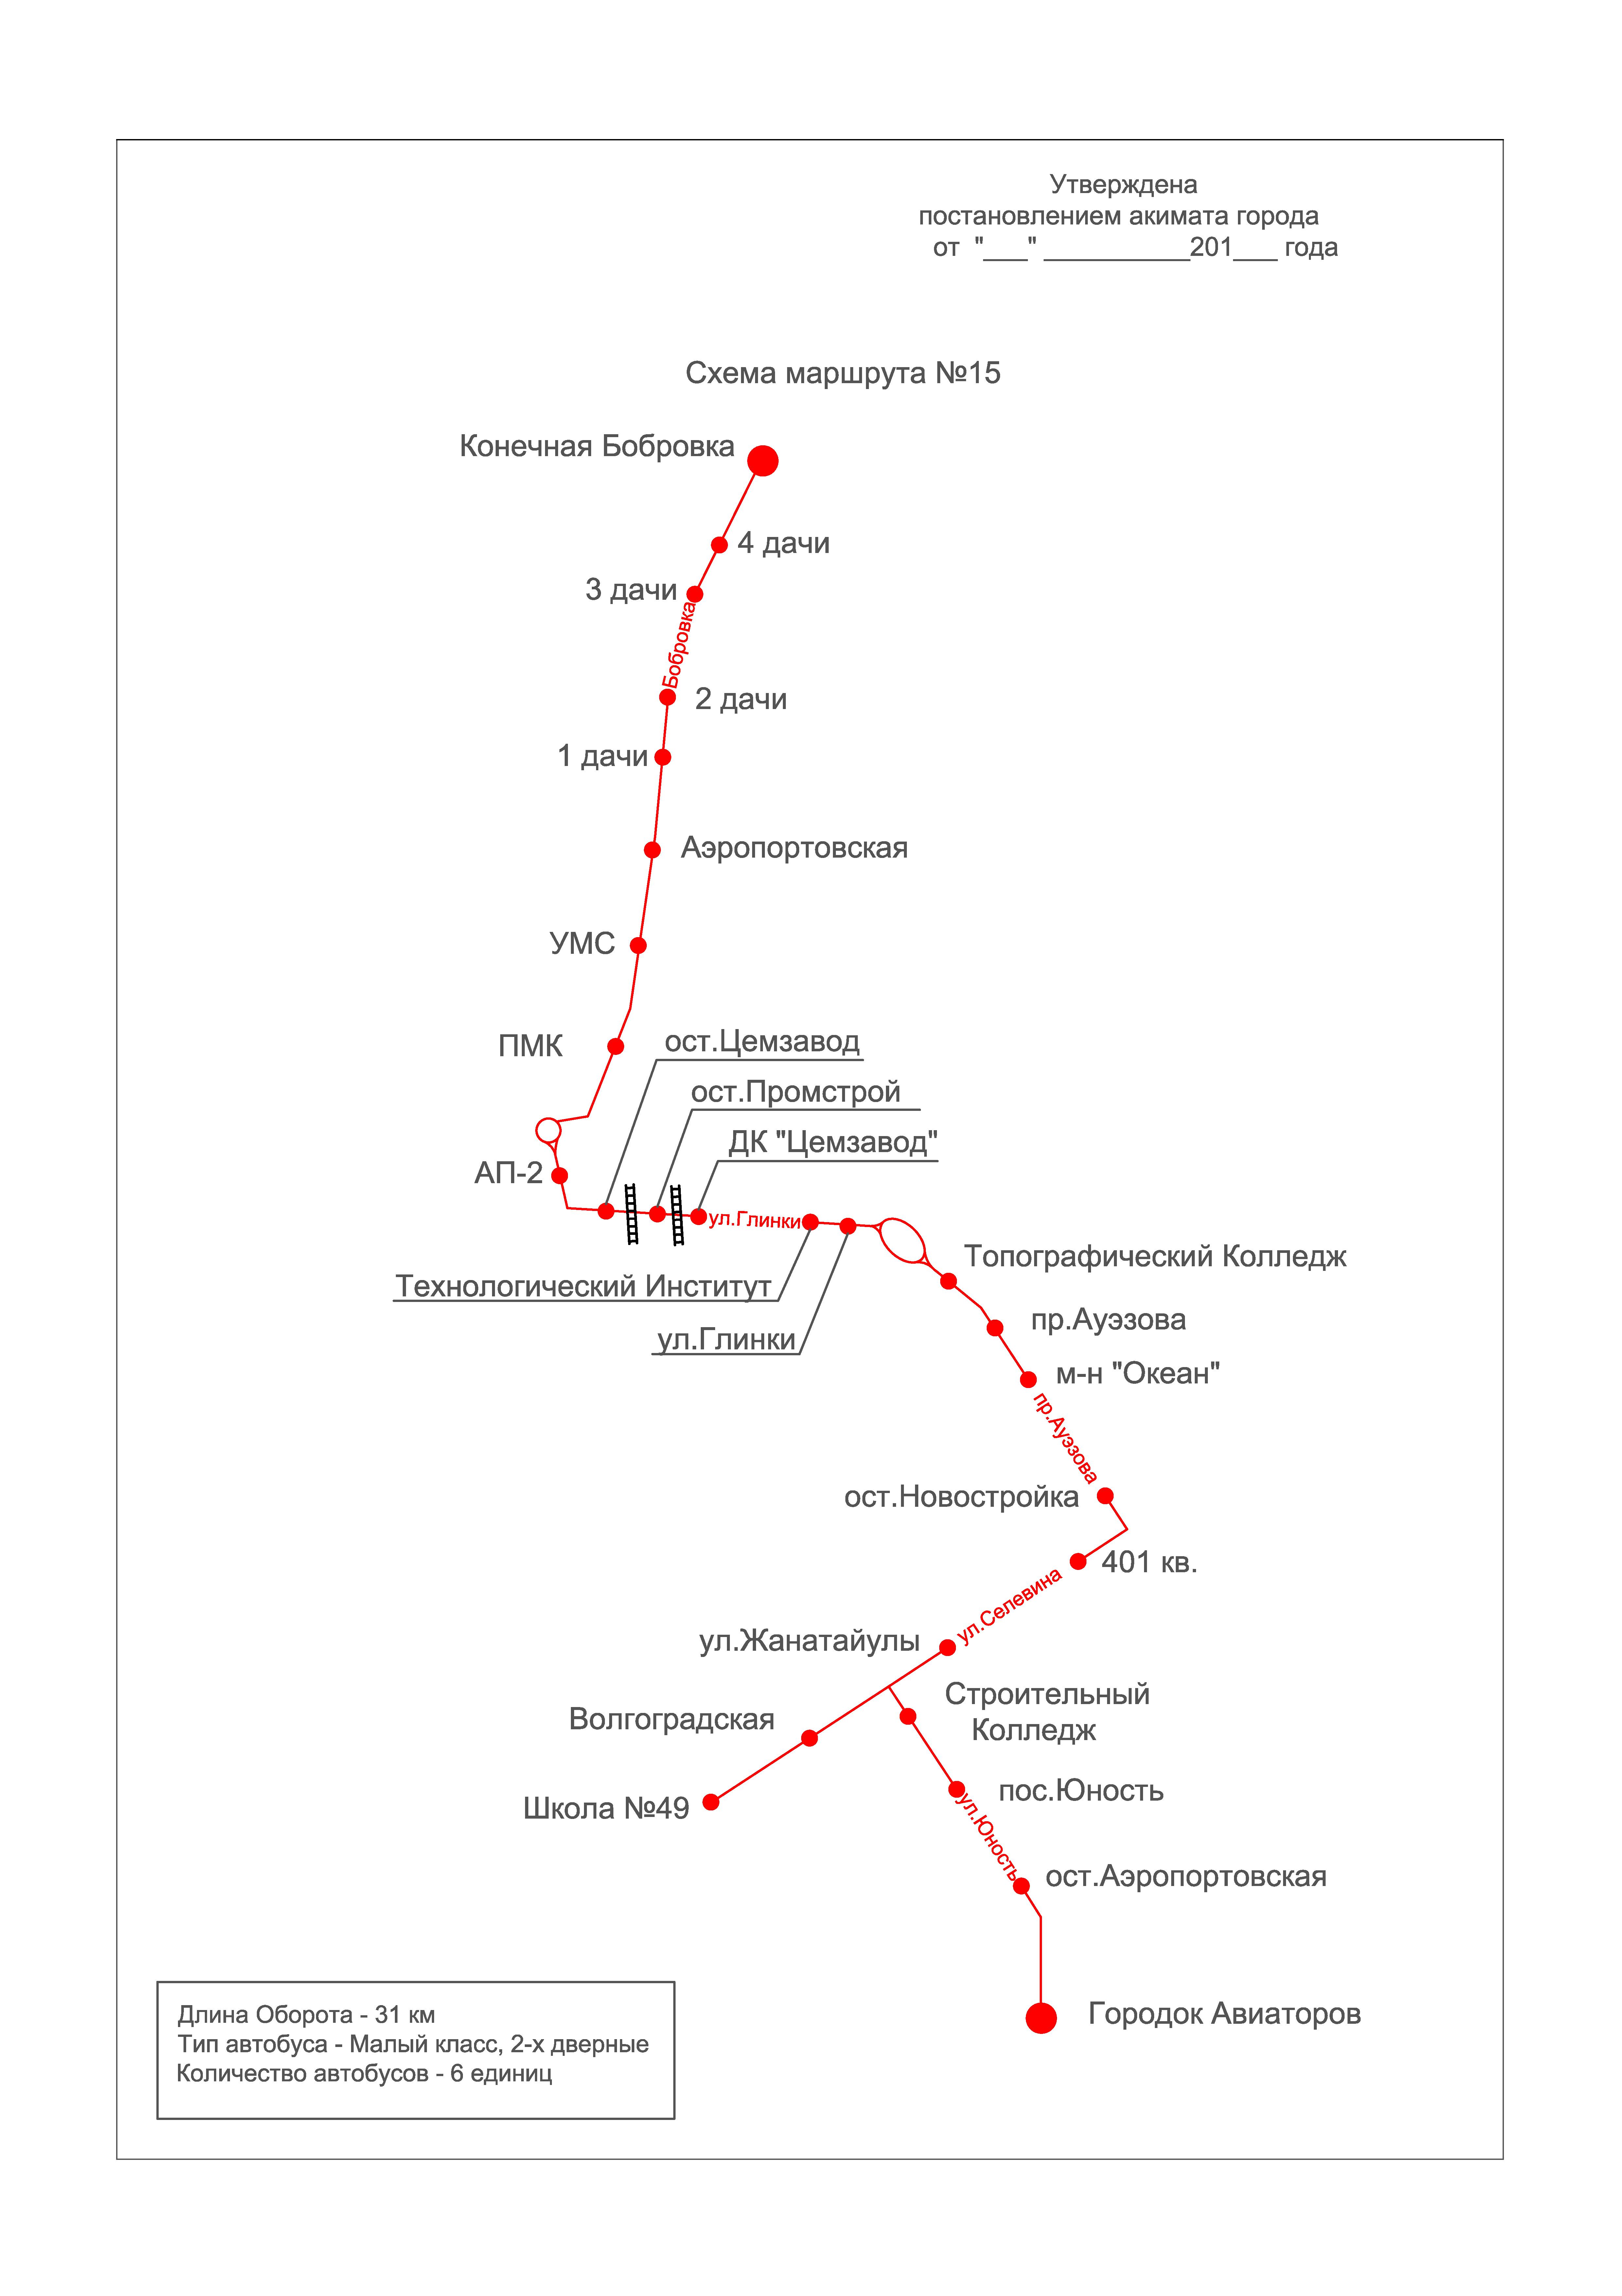 Схема 33 маршрут